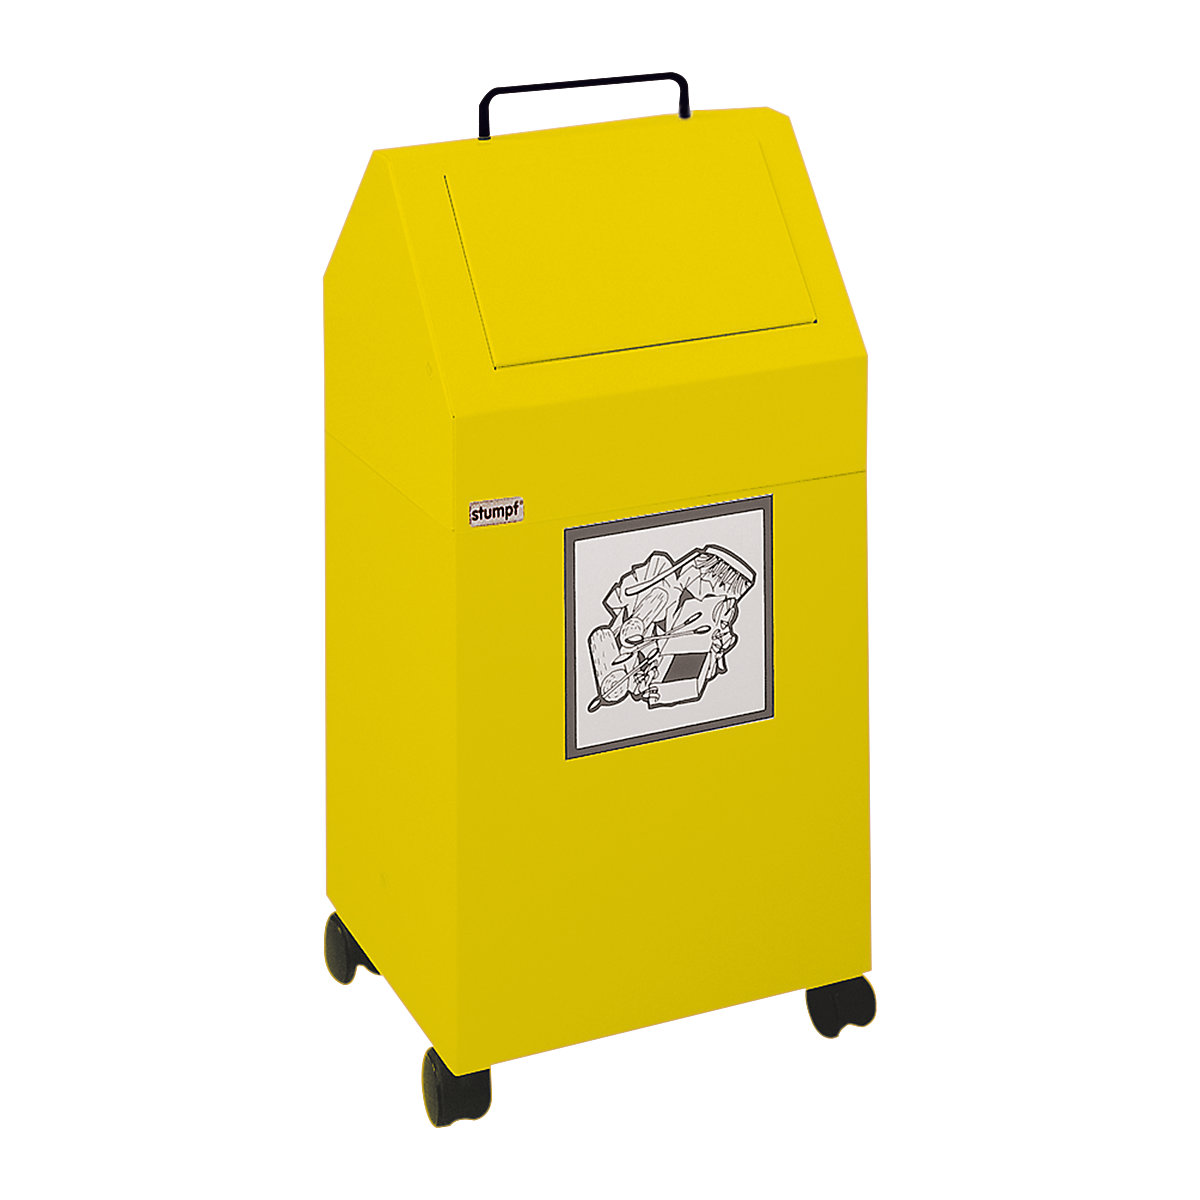 Wertstoffbehälter mit Einwurfklappe, Volumen 45 l, BxHxT 320 x 710 x 310 mm, fahrbar, gelb RAL 1003-4